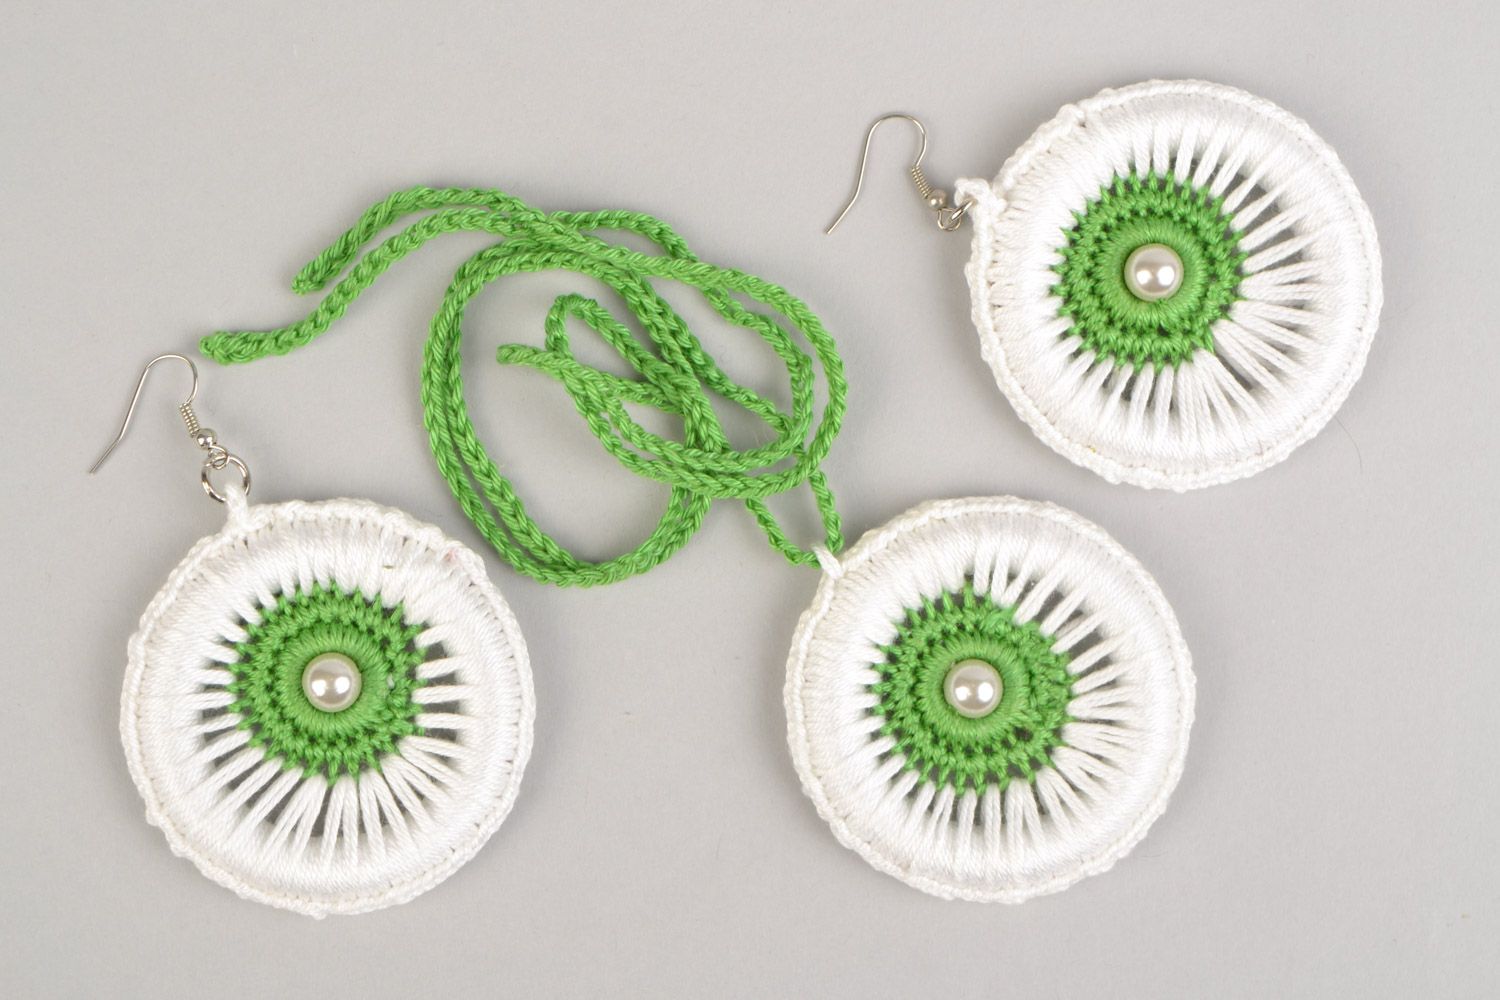 Textil Schmuckset Lange Ohrringe und 
Anhänger aus Fäden geflochten in Weiß und Grün handmade foto 2